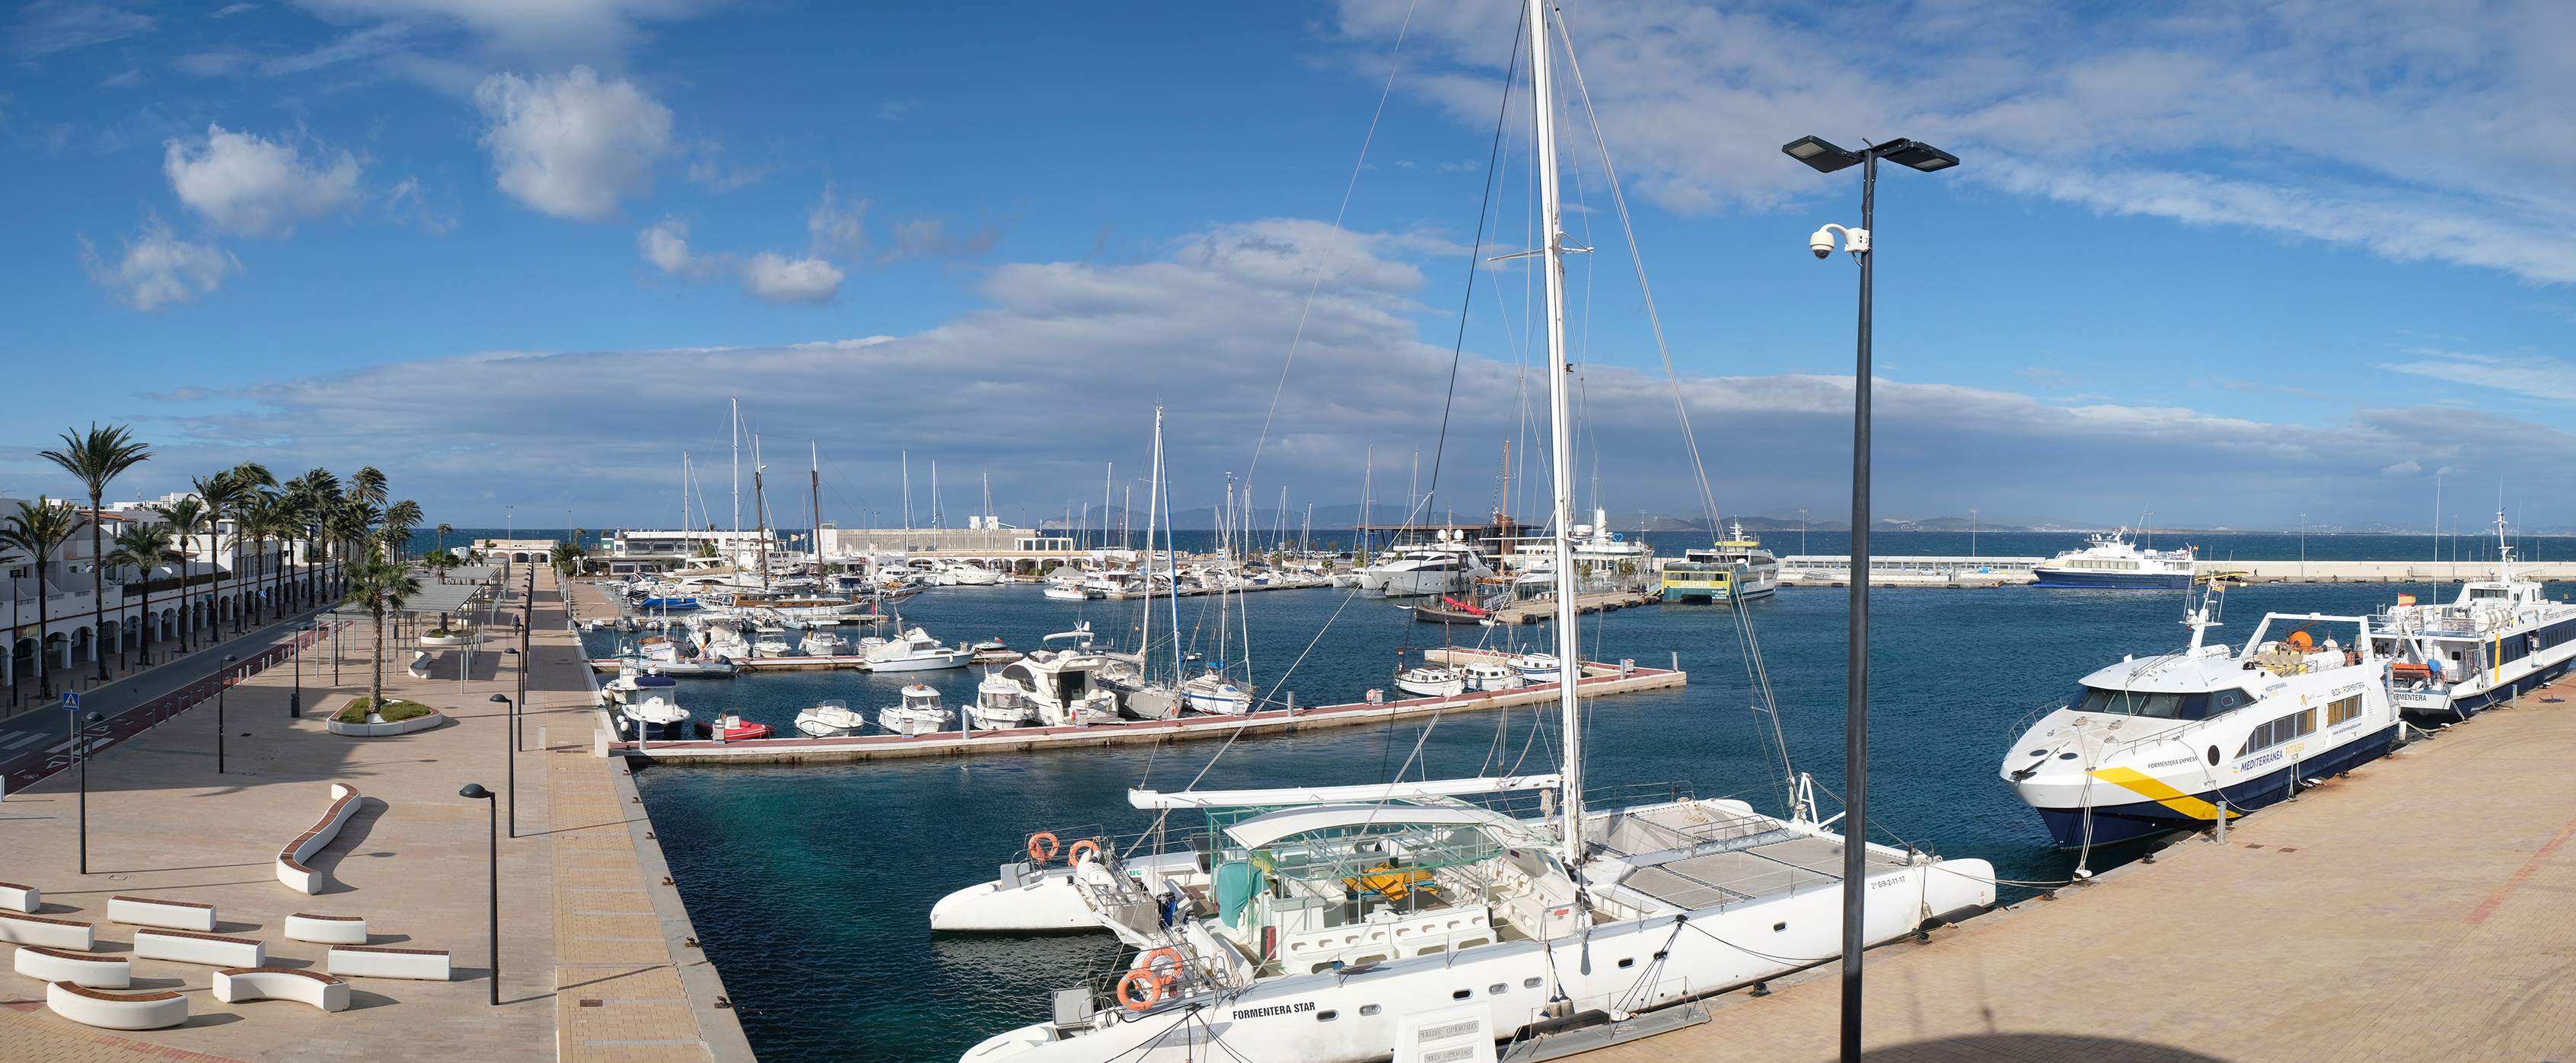 Der Vorschlag von Puertos y Litorales Sostenibles wurde als das günstigste Angebot für die Nutzung der Anlegestelle für kleinere Schiffe im Hafen von La Savina ausgewählt